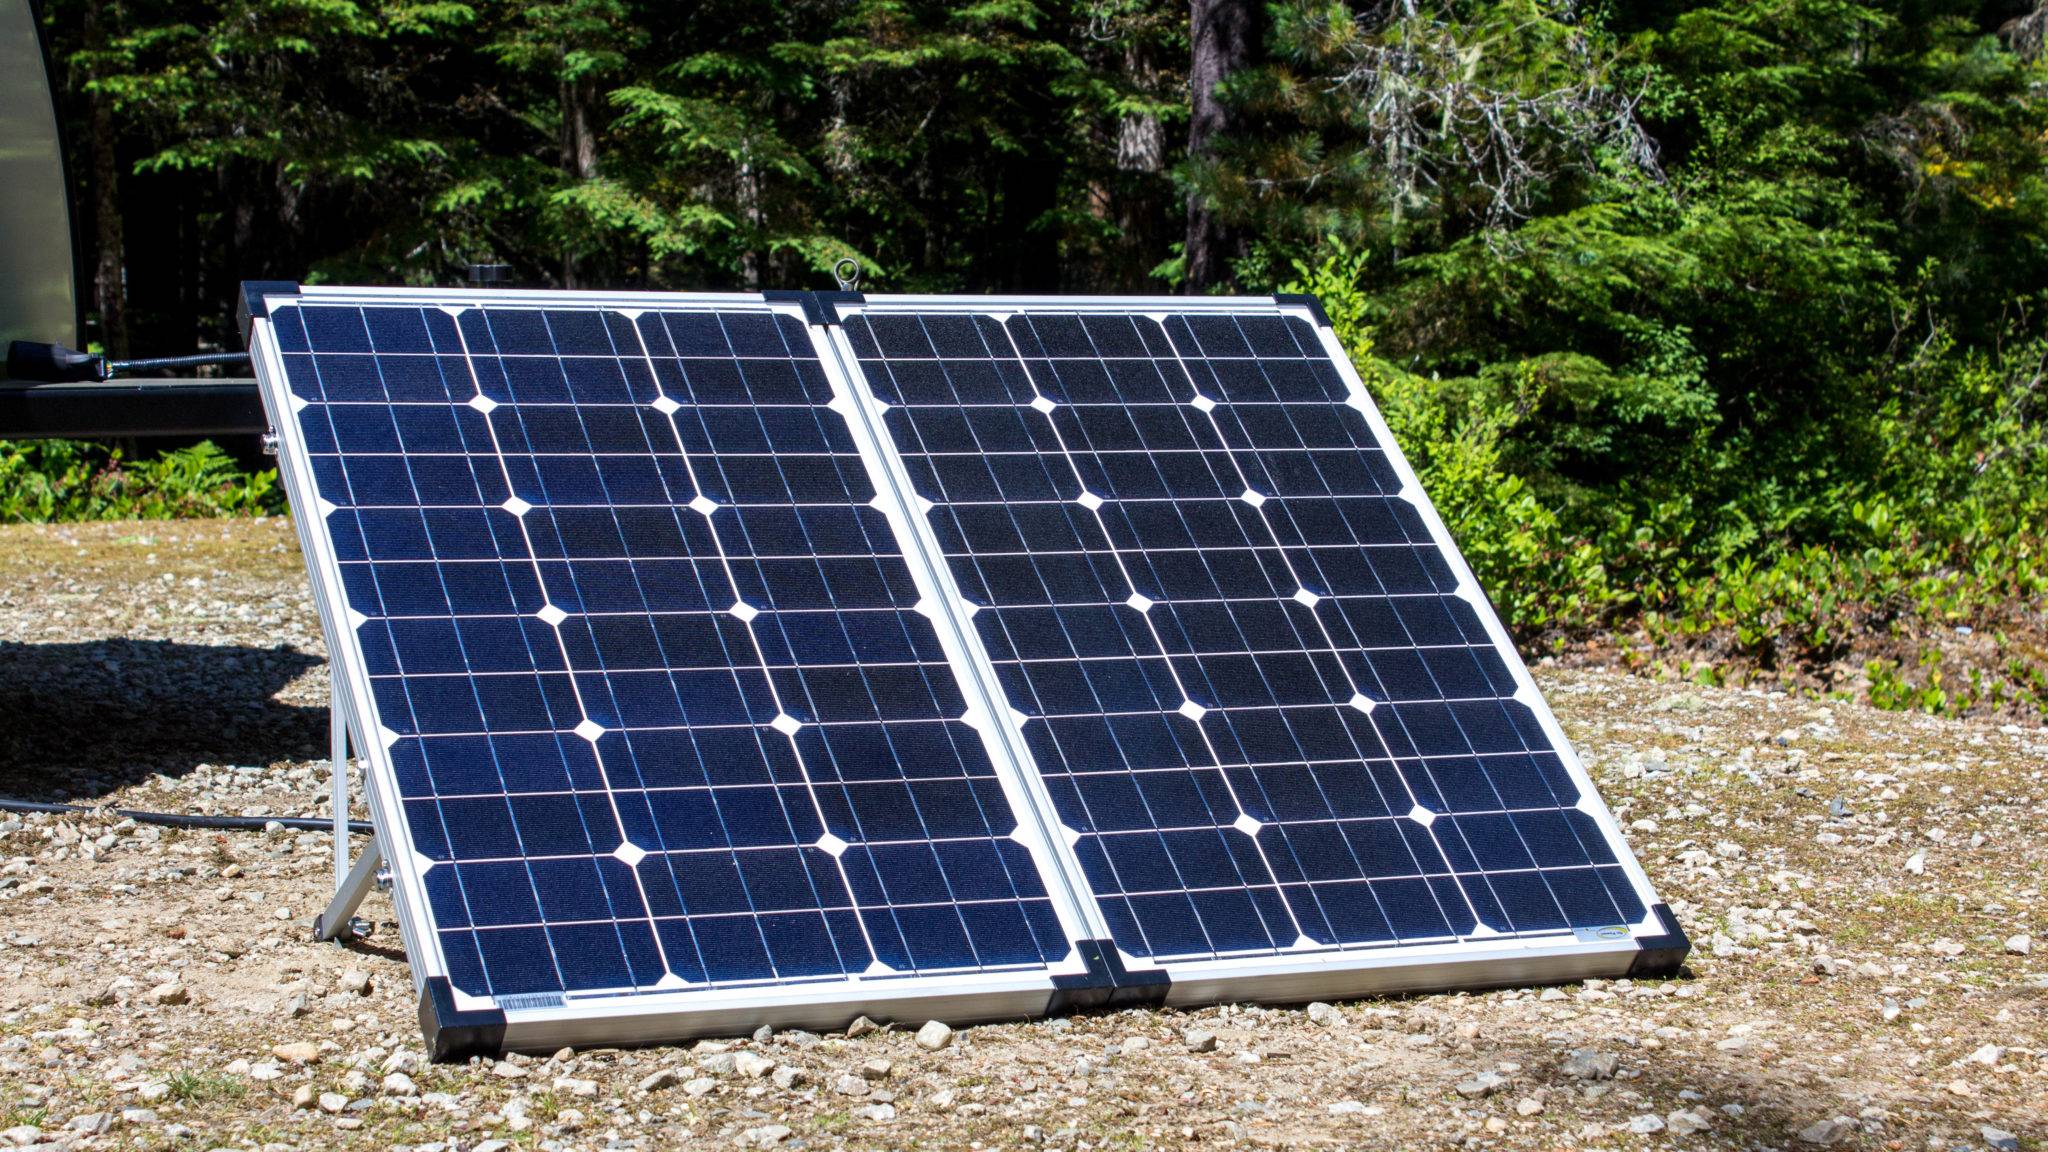 120 watt solar panels for the Evolve Solar Teardrop Camping Trailer